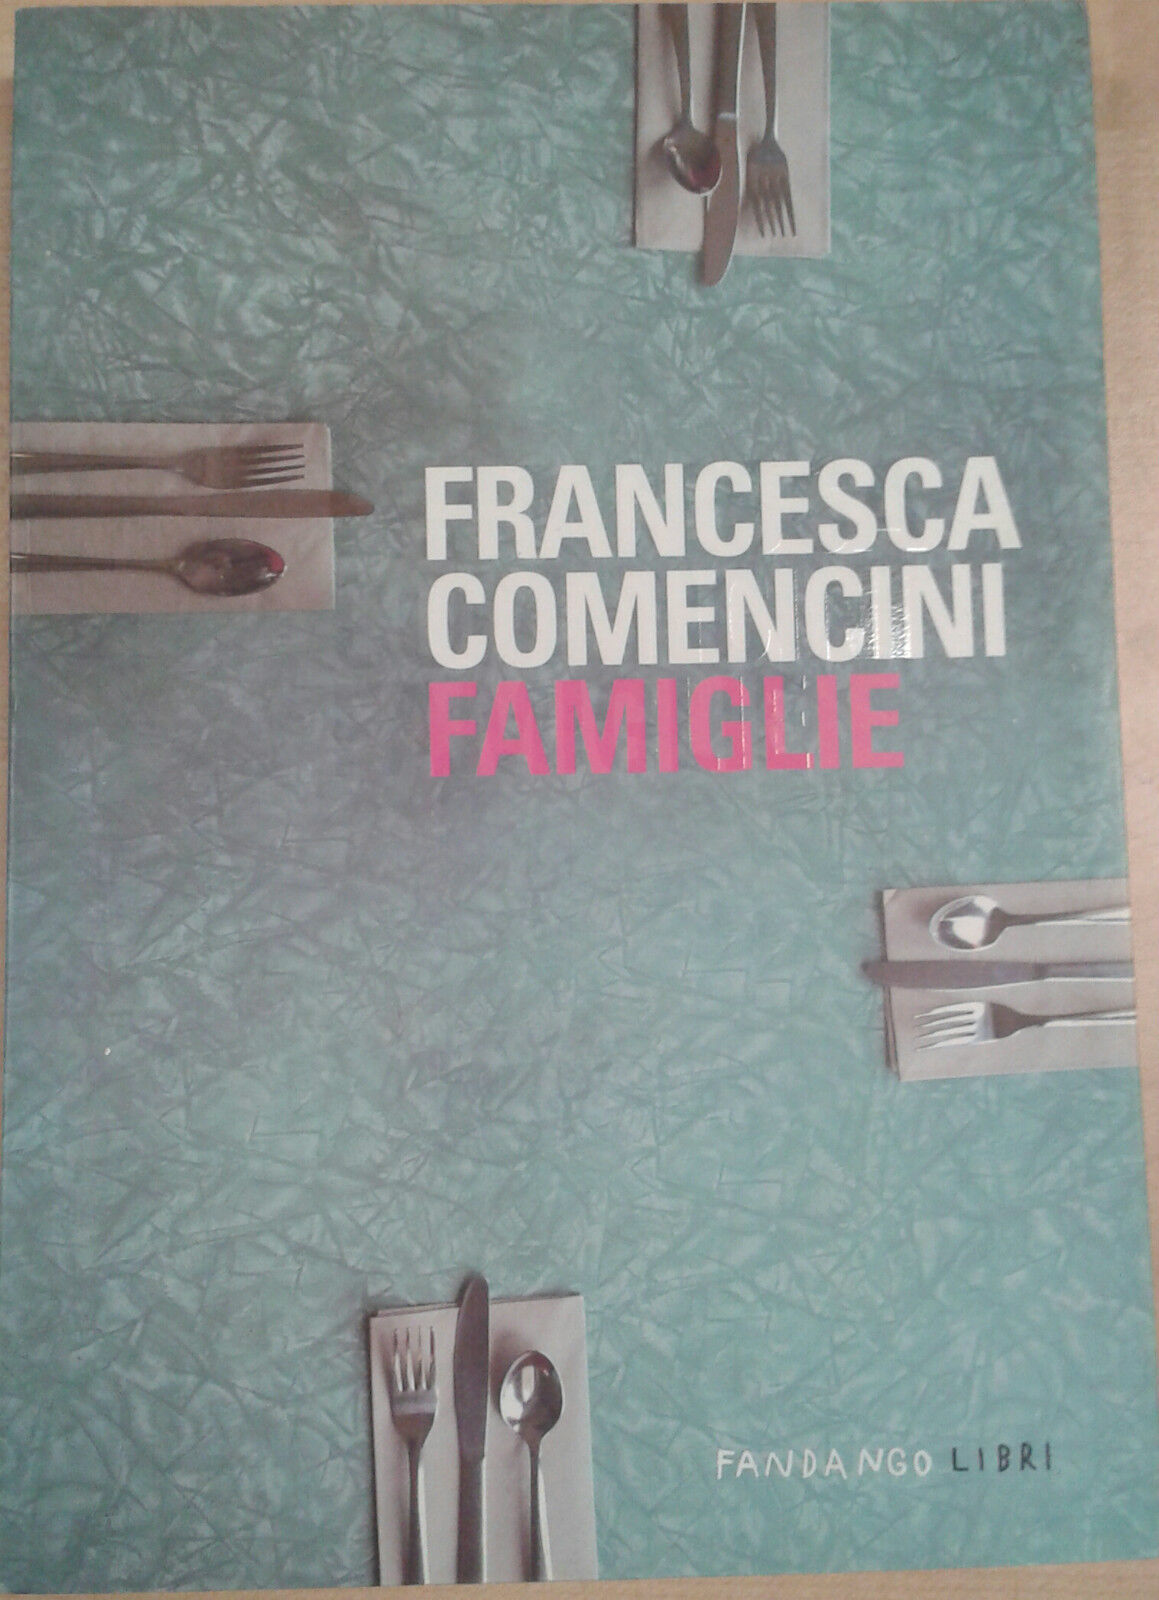 Famiglie - Comencini Francesca - FANDANGO LIBRI - 2011 - M